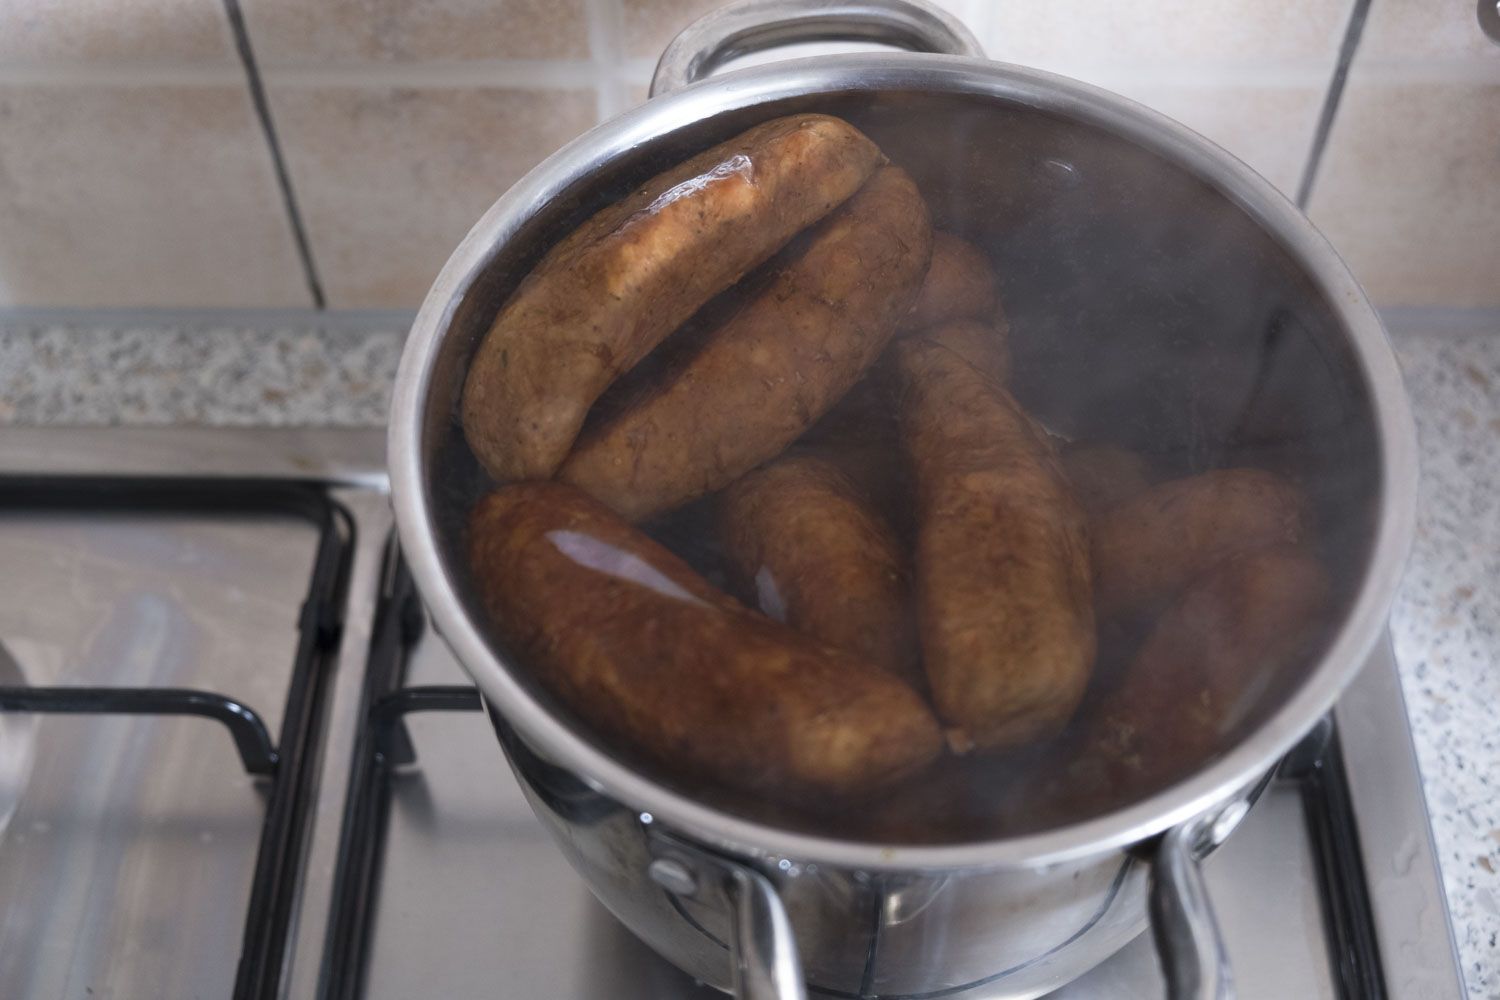 Astuce réunionnaise : faire bouillir les saucisses avant de les faire cuire dans le jus pour les dégraisser.